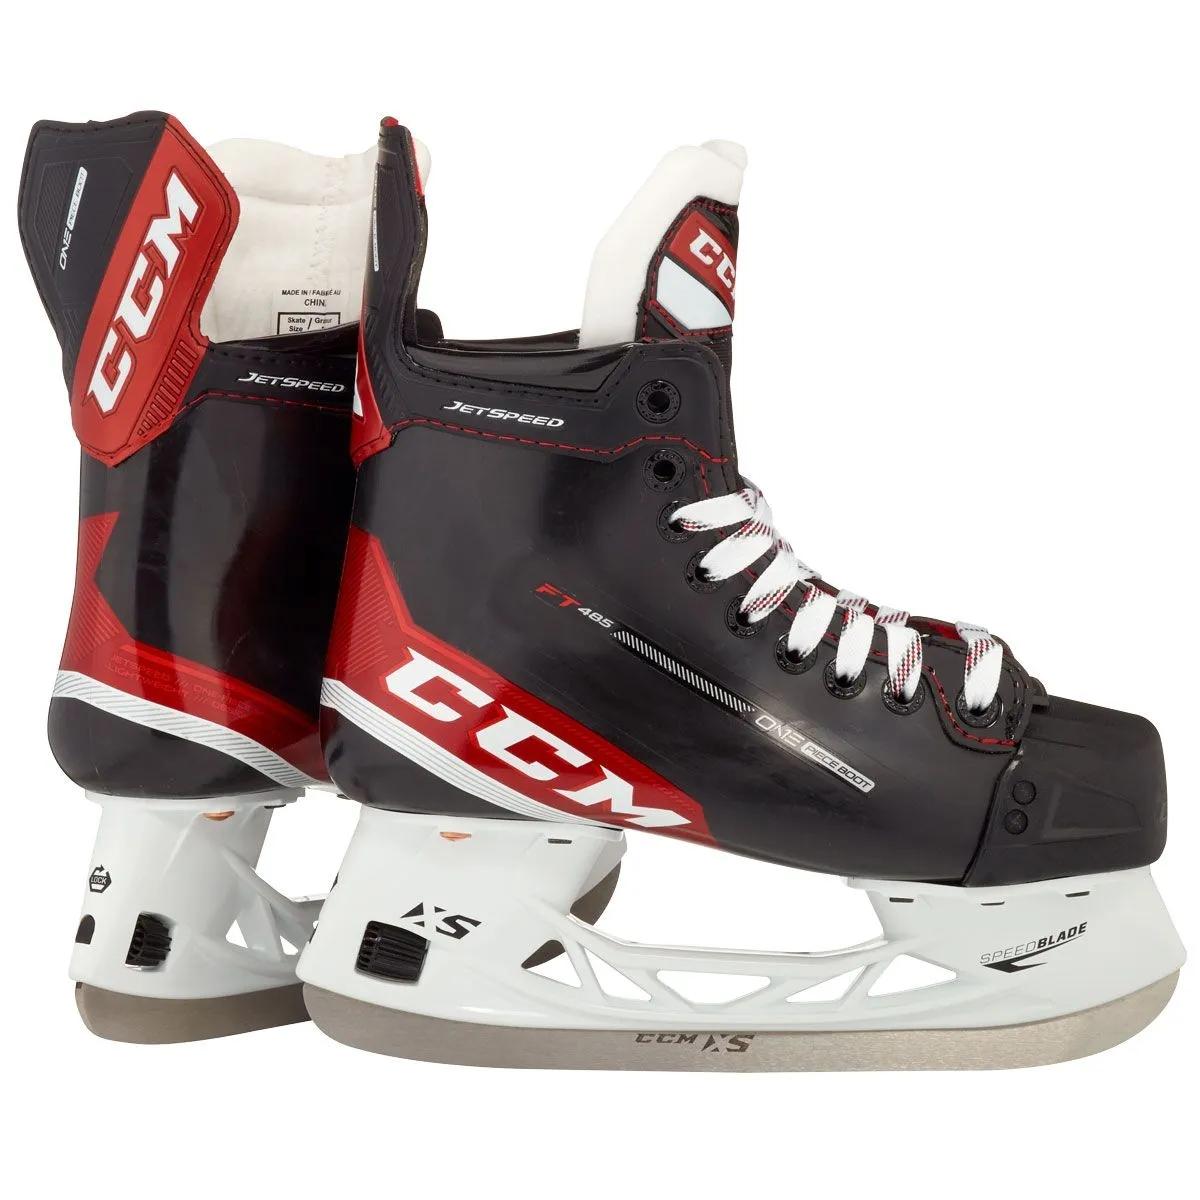 CCM Jetspeed FT485 Jr. Hockey Skatesproduct zoom image #1